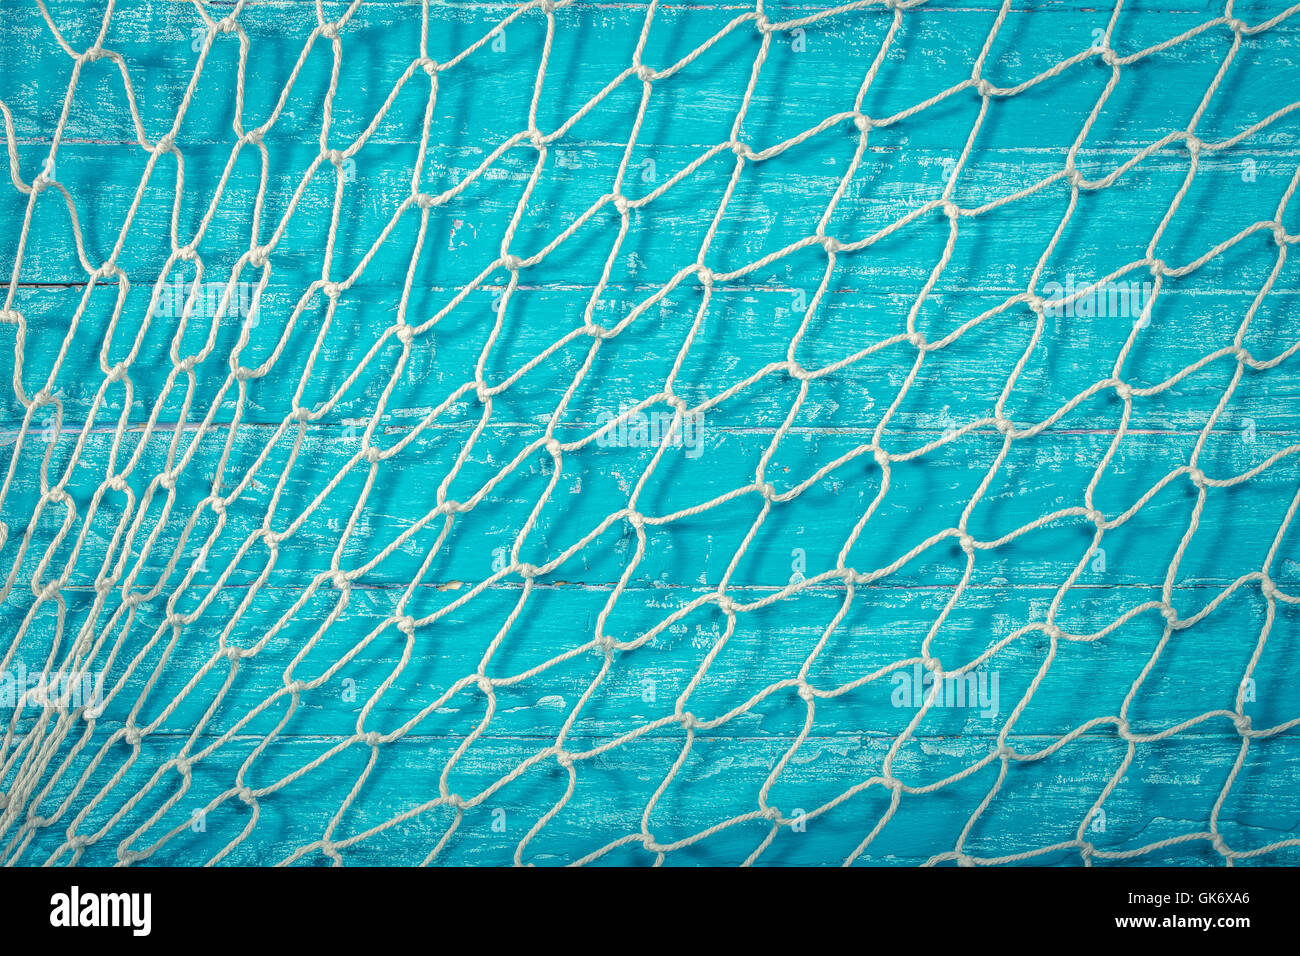 Fondo de la red de pesca fotografías e imágenes de alta resolución - Alamy